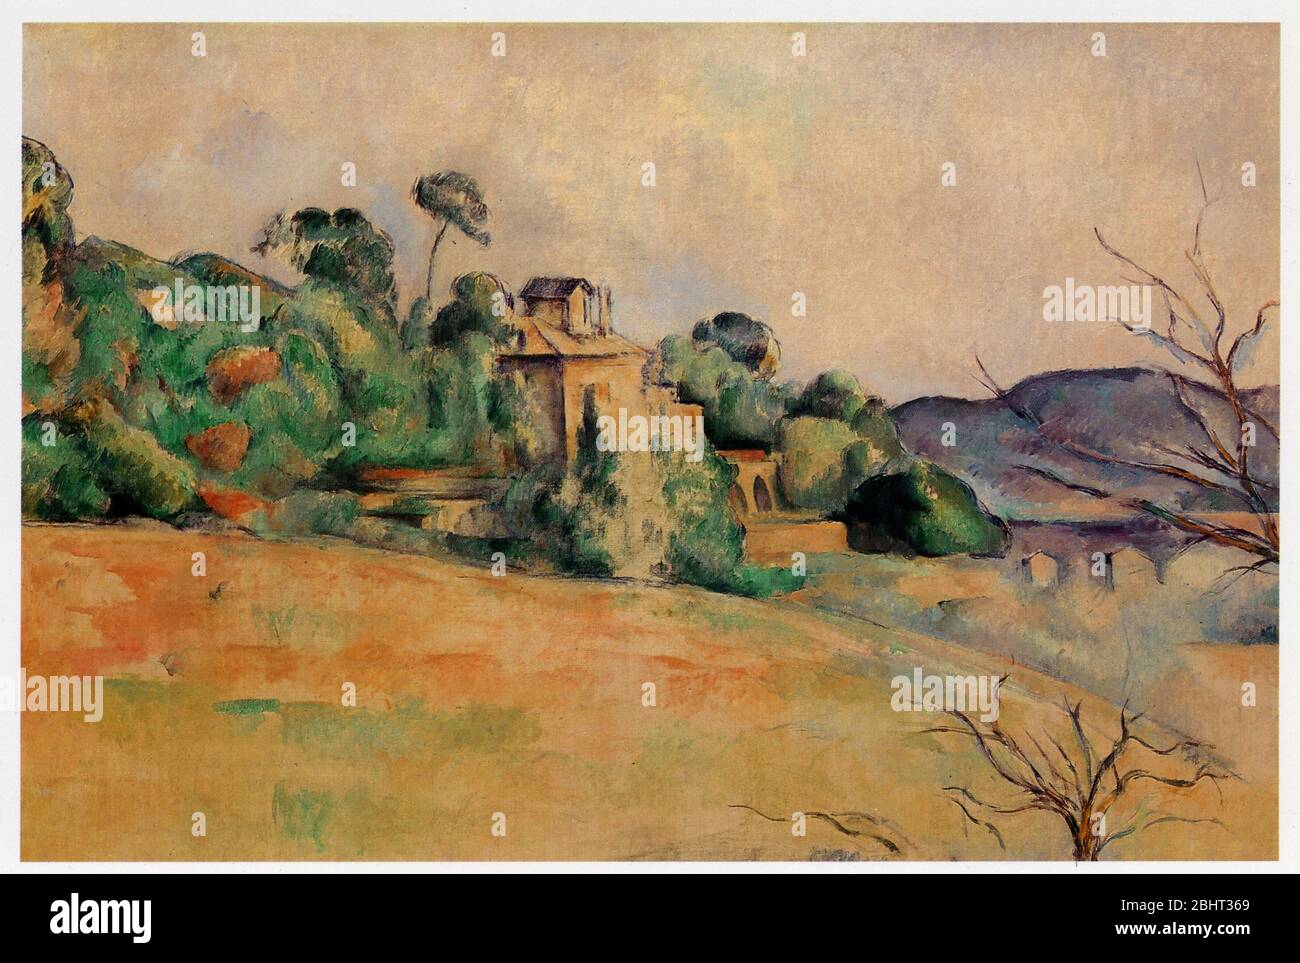 Paul Cézanne (1839-1906). Paysage du midi. Huile sur toile. 1885-1887 Stock Photo